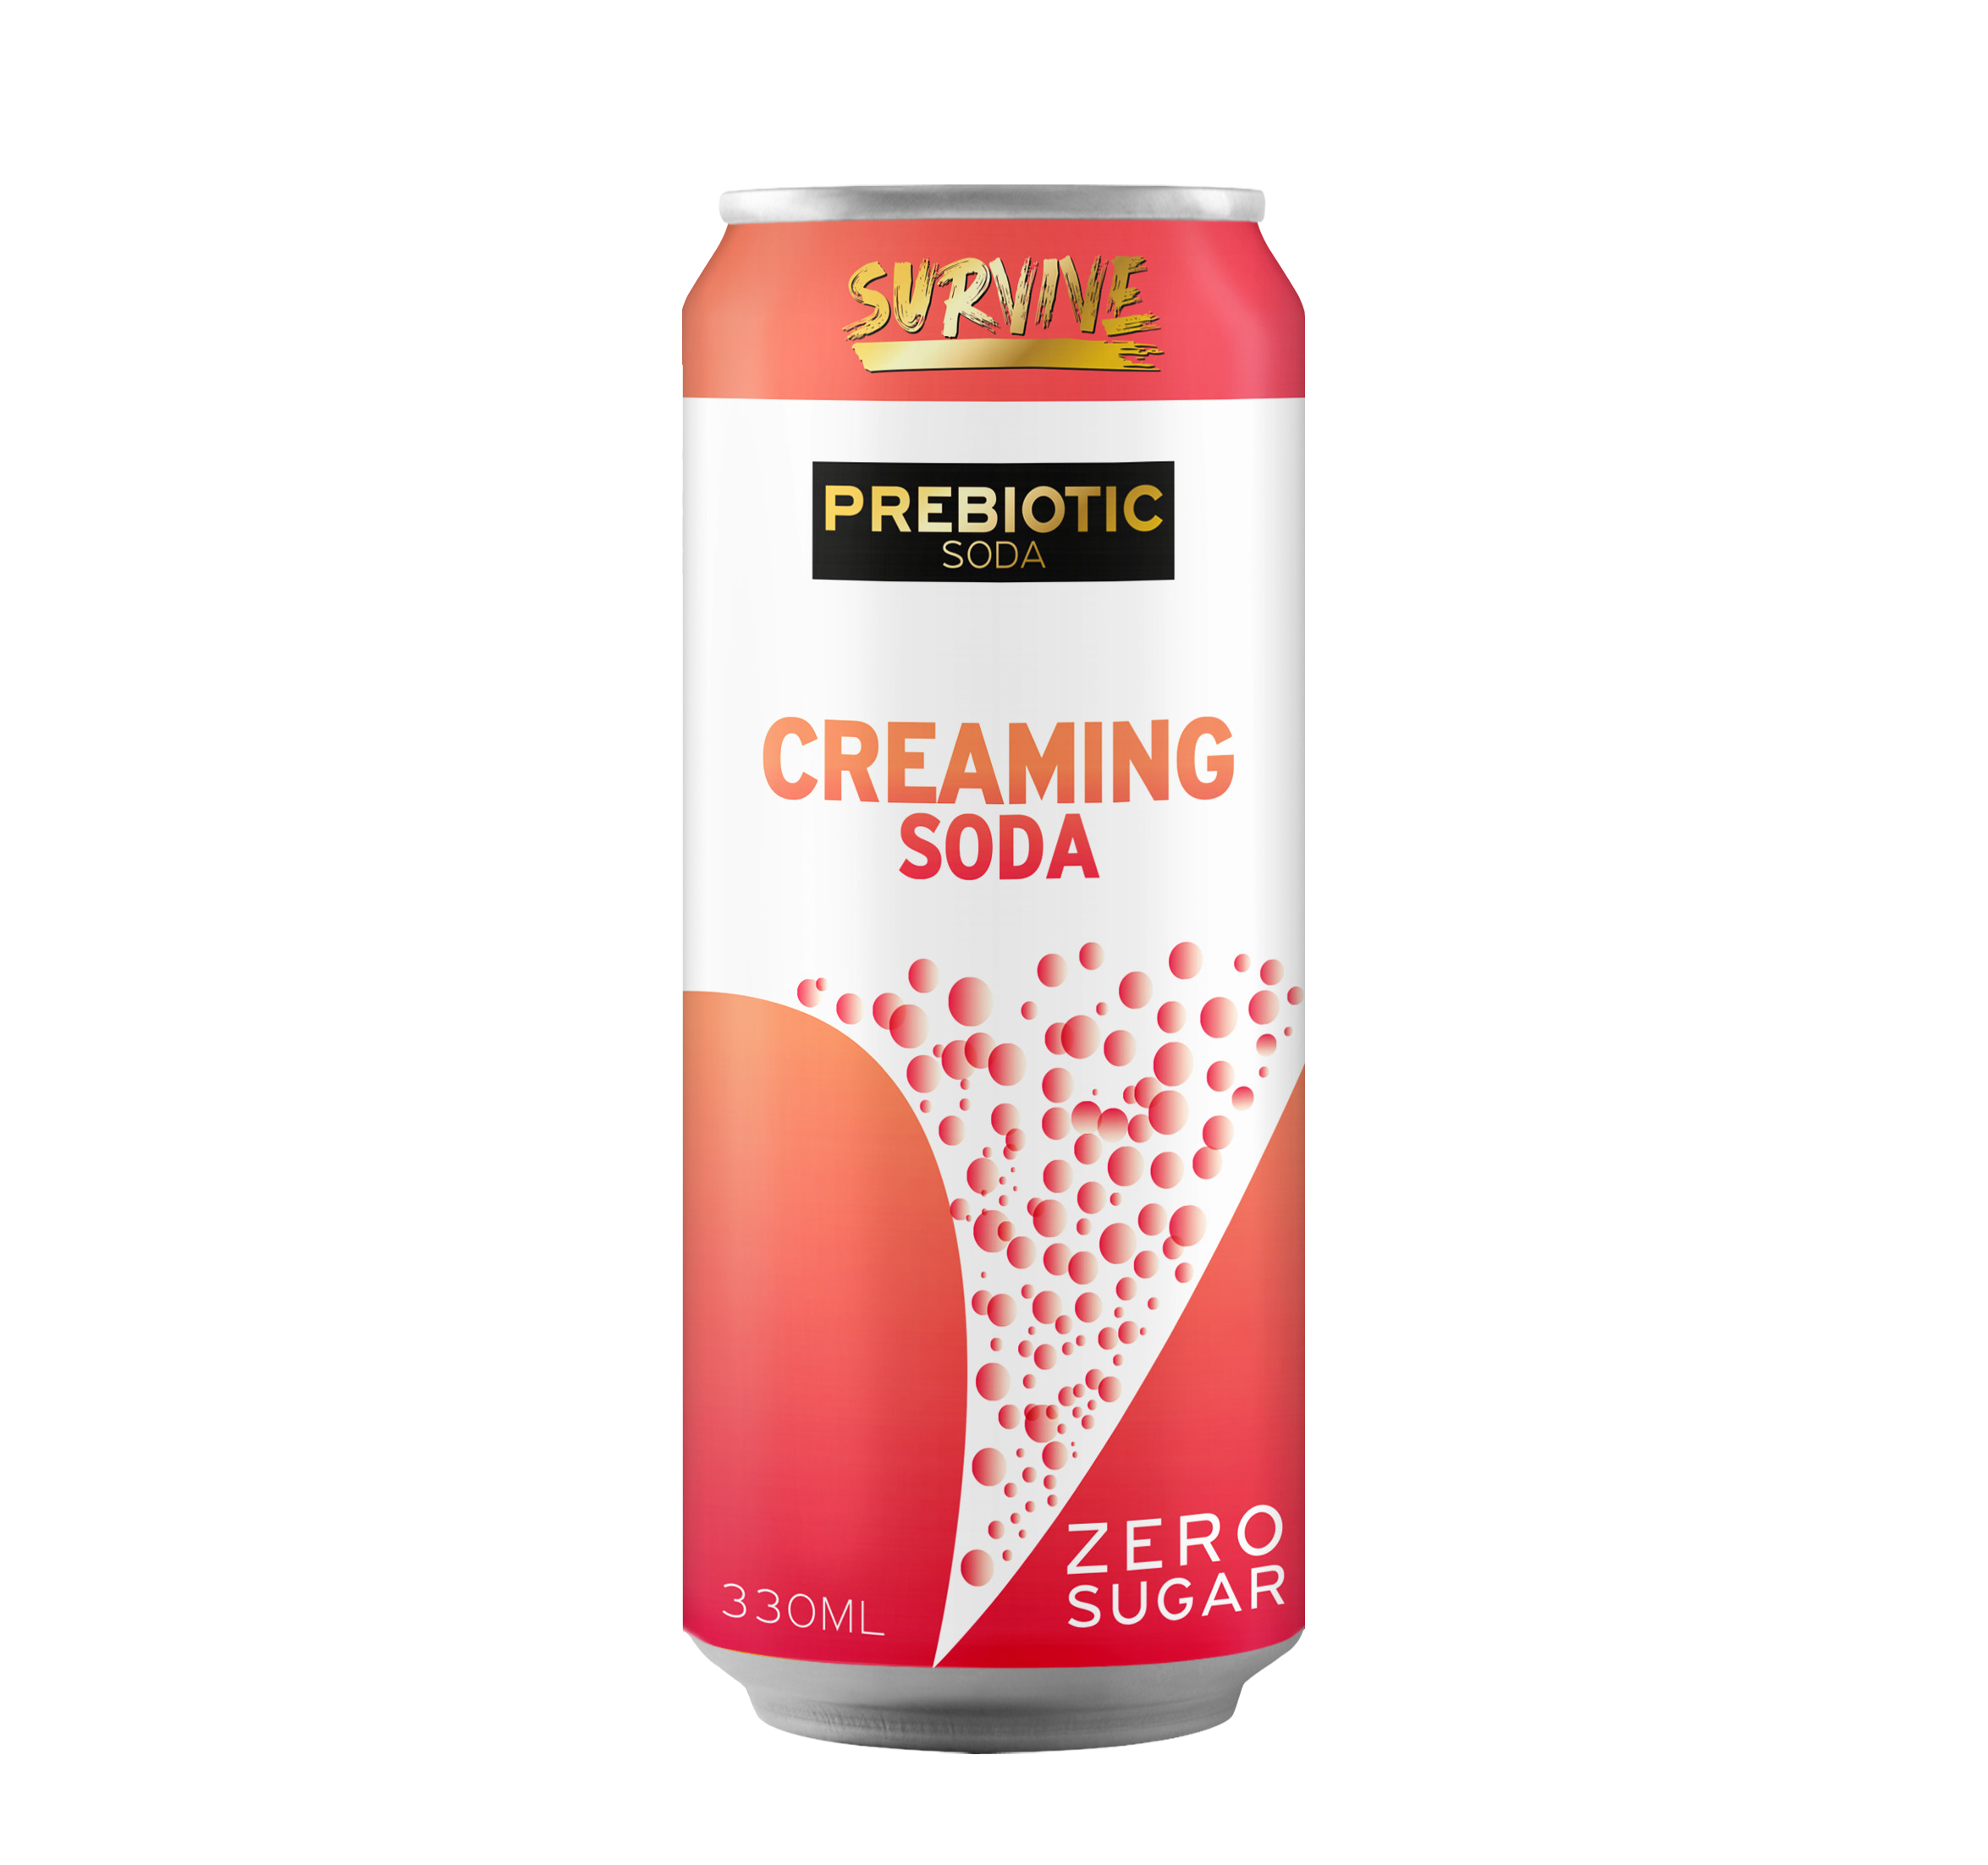 Survive prebiotic Soda Creaming